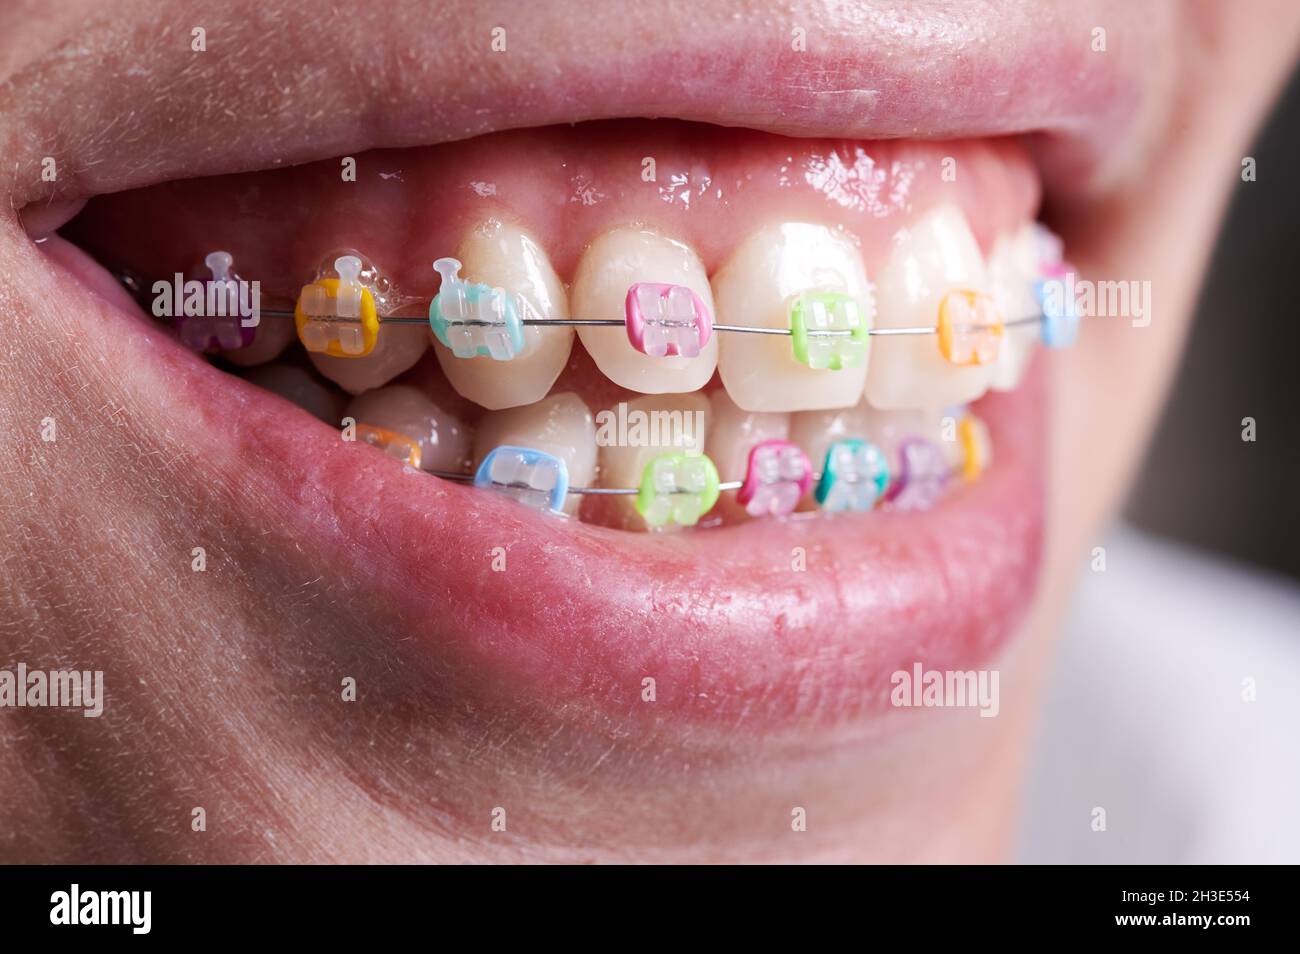 Gros plan d'appareils orthodontiques avec joints toriques colorés sur les dents.Femme patiente présentant des supports dentaires avec des bandes en caoutchouc multicolores.Concept de la dentisterie, de l'orthodontie et de la stomatologie. Banque D'Images